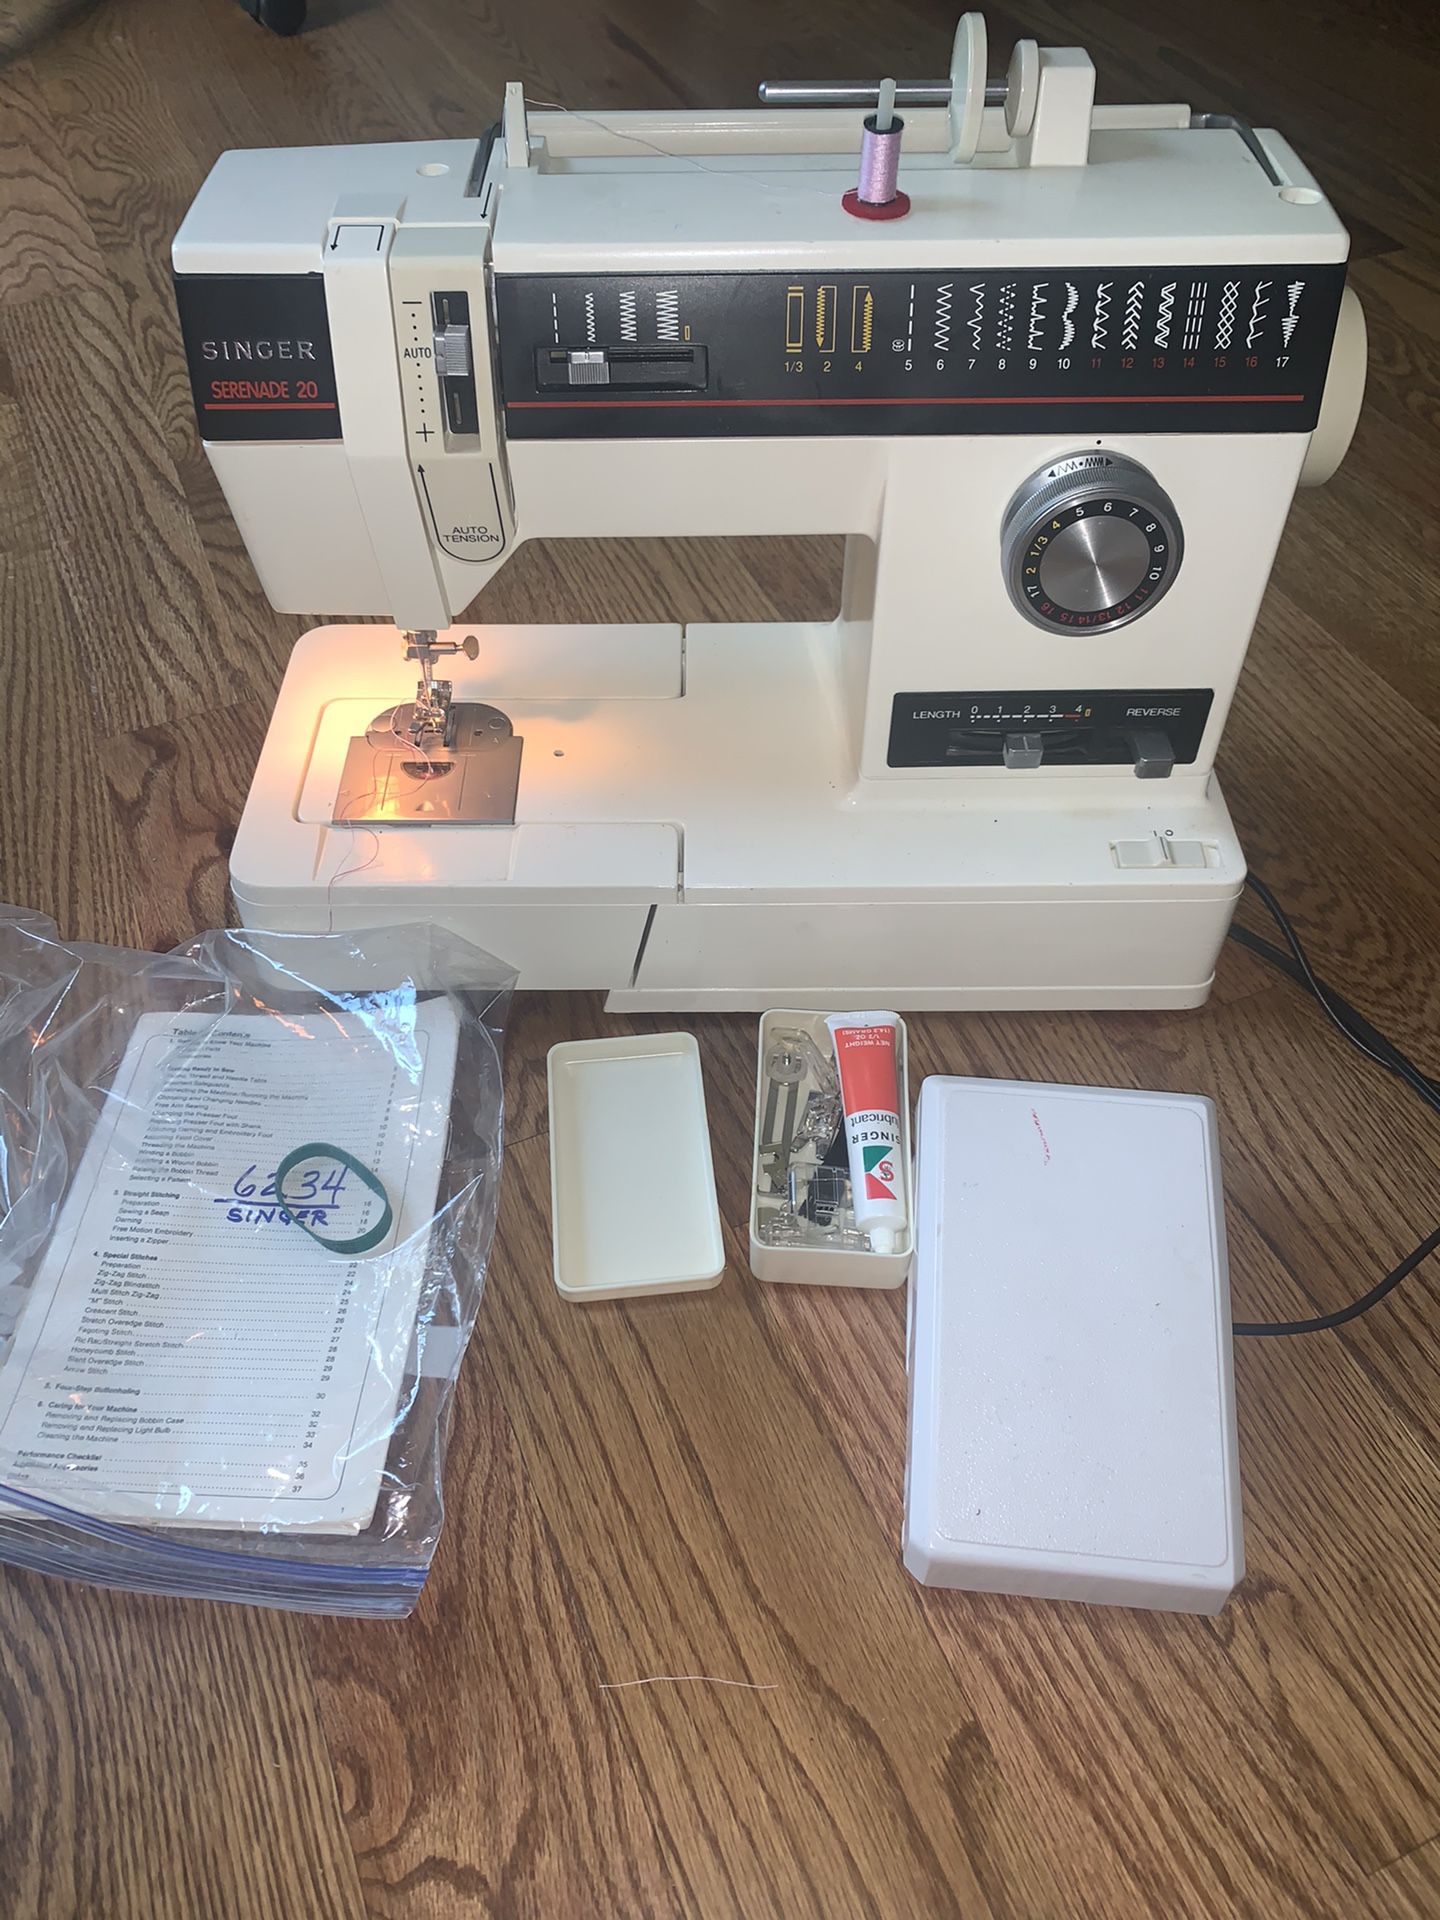 Singer 6234 sewing machine